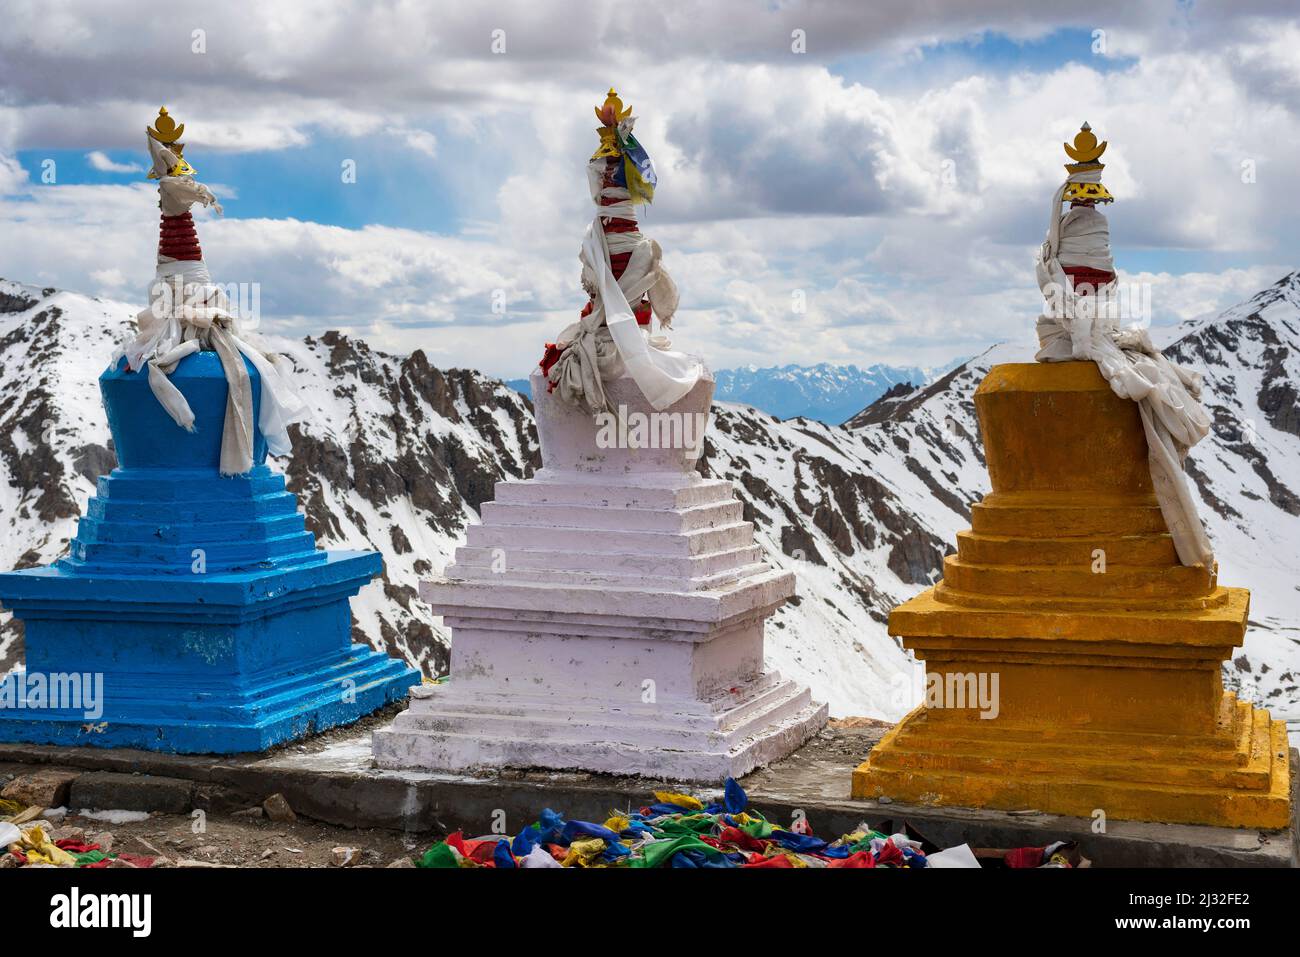 Tschörtengruppe sur le col de Khardong, deuxième plus haut passage motorisé au monde, Ladakh, Himalaya indien, Jammu et Cachemire, Inde du Nord, Inde, Asie Banque D'Images